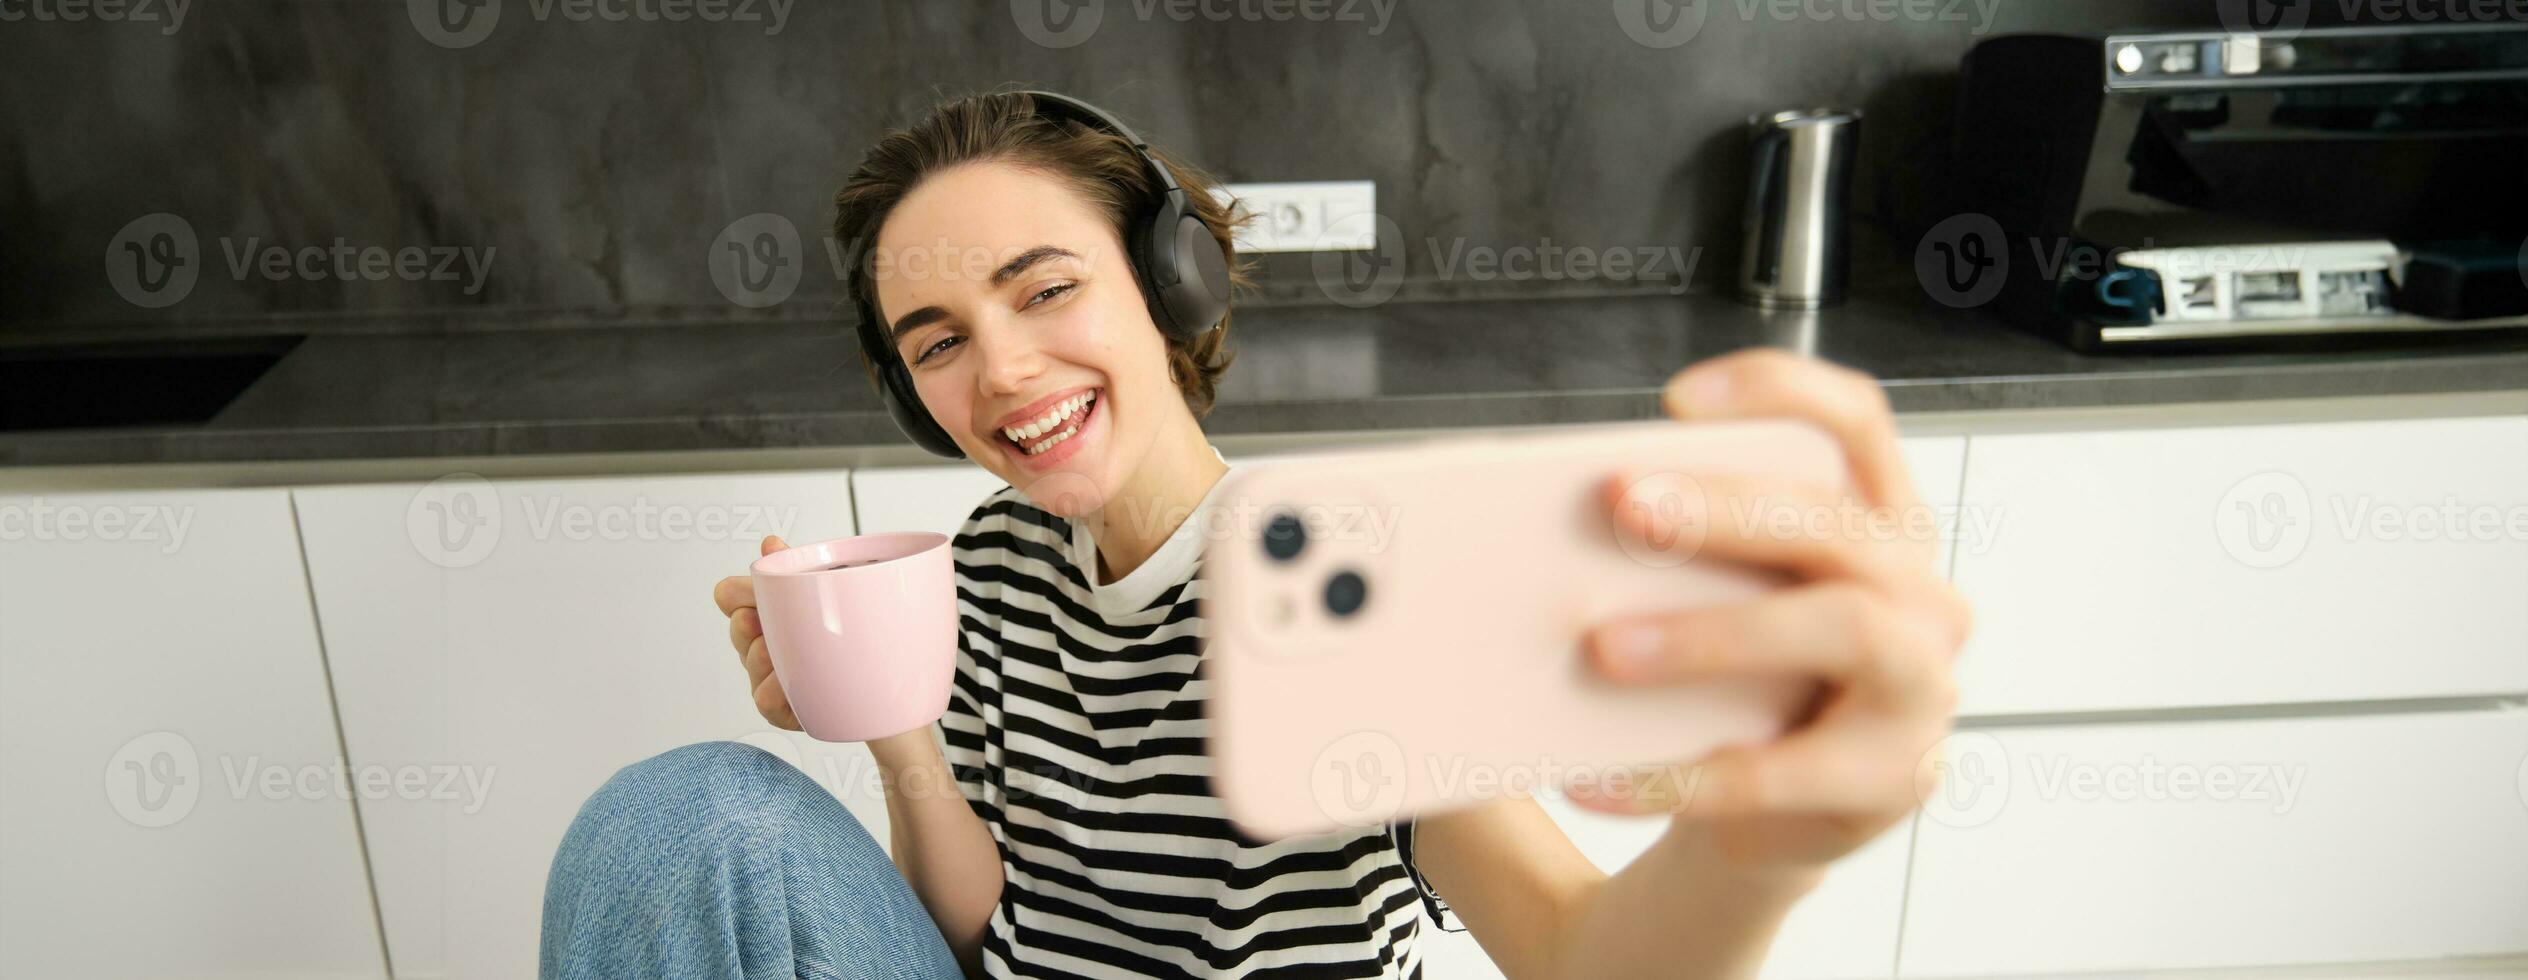 proche en haut portrait de femme avec téléphone intelligent, prise selfie tandis que en buvant thé et écoute la musique dans écouteurs, fabrication Photos pour sa social médias app dans le cuisine